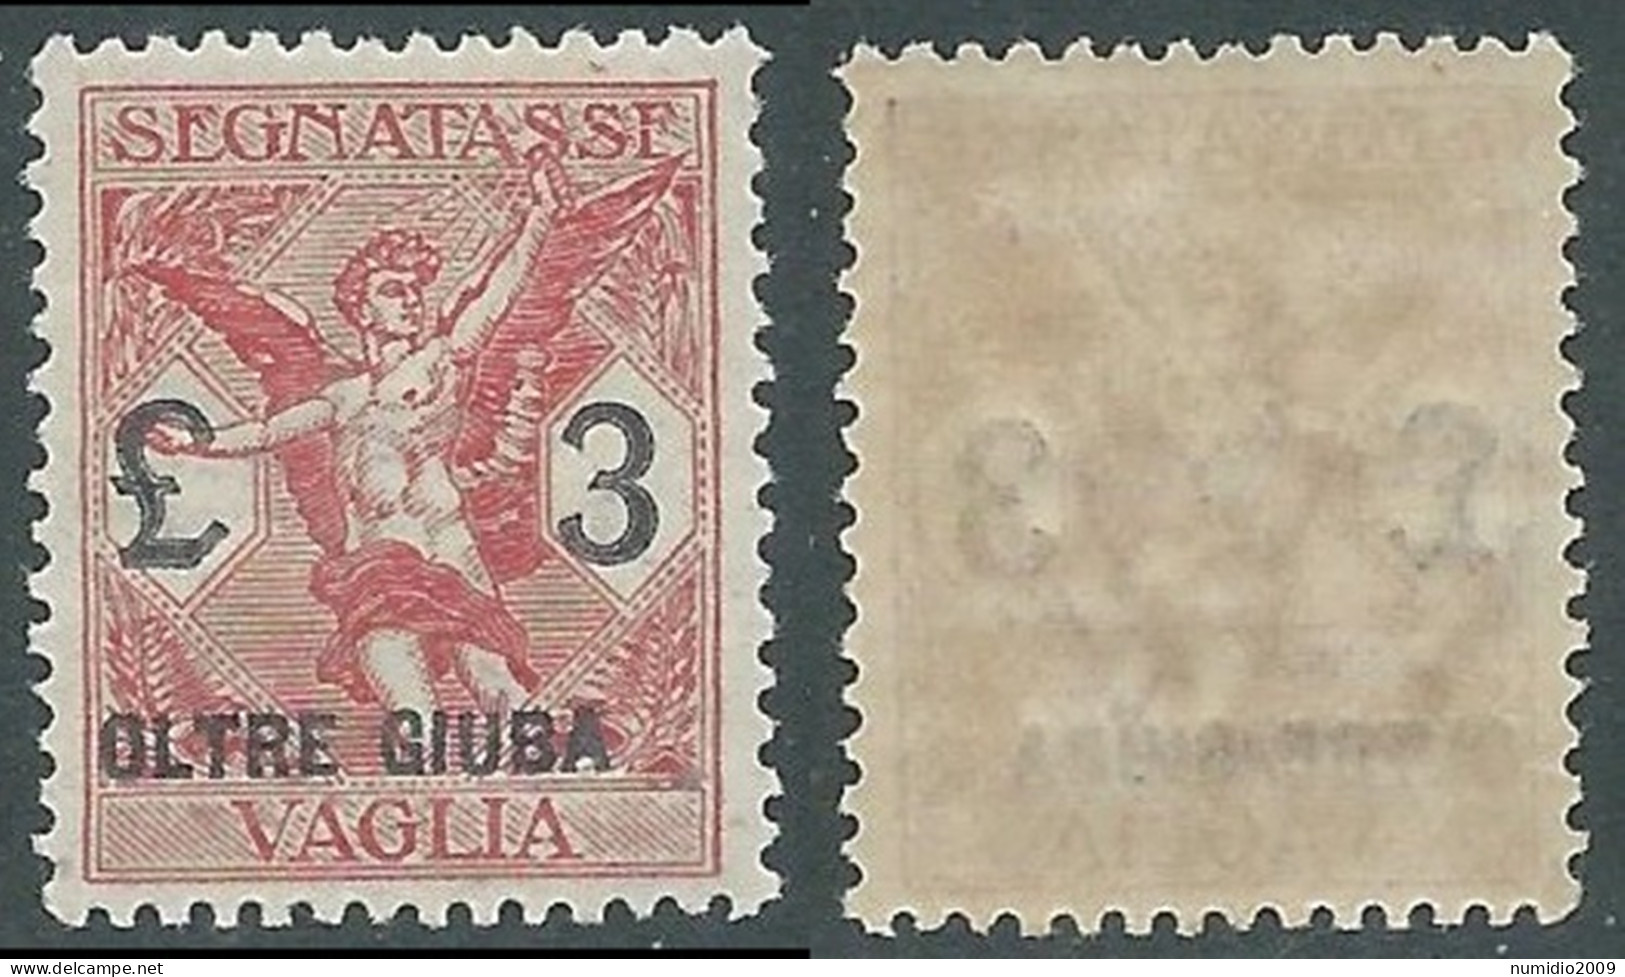 1925 OLTRE GIUBA SEGNATASSE PER VAGLIA 3 LIRE MNH ** - I55-3 - Oltre Giuba